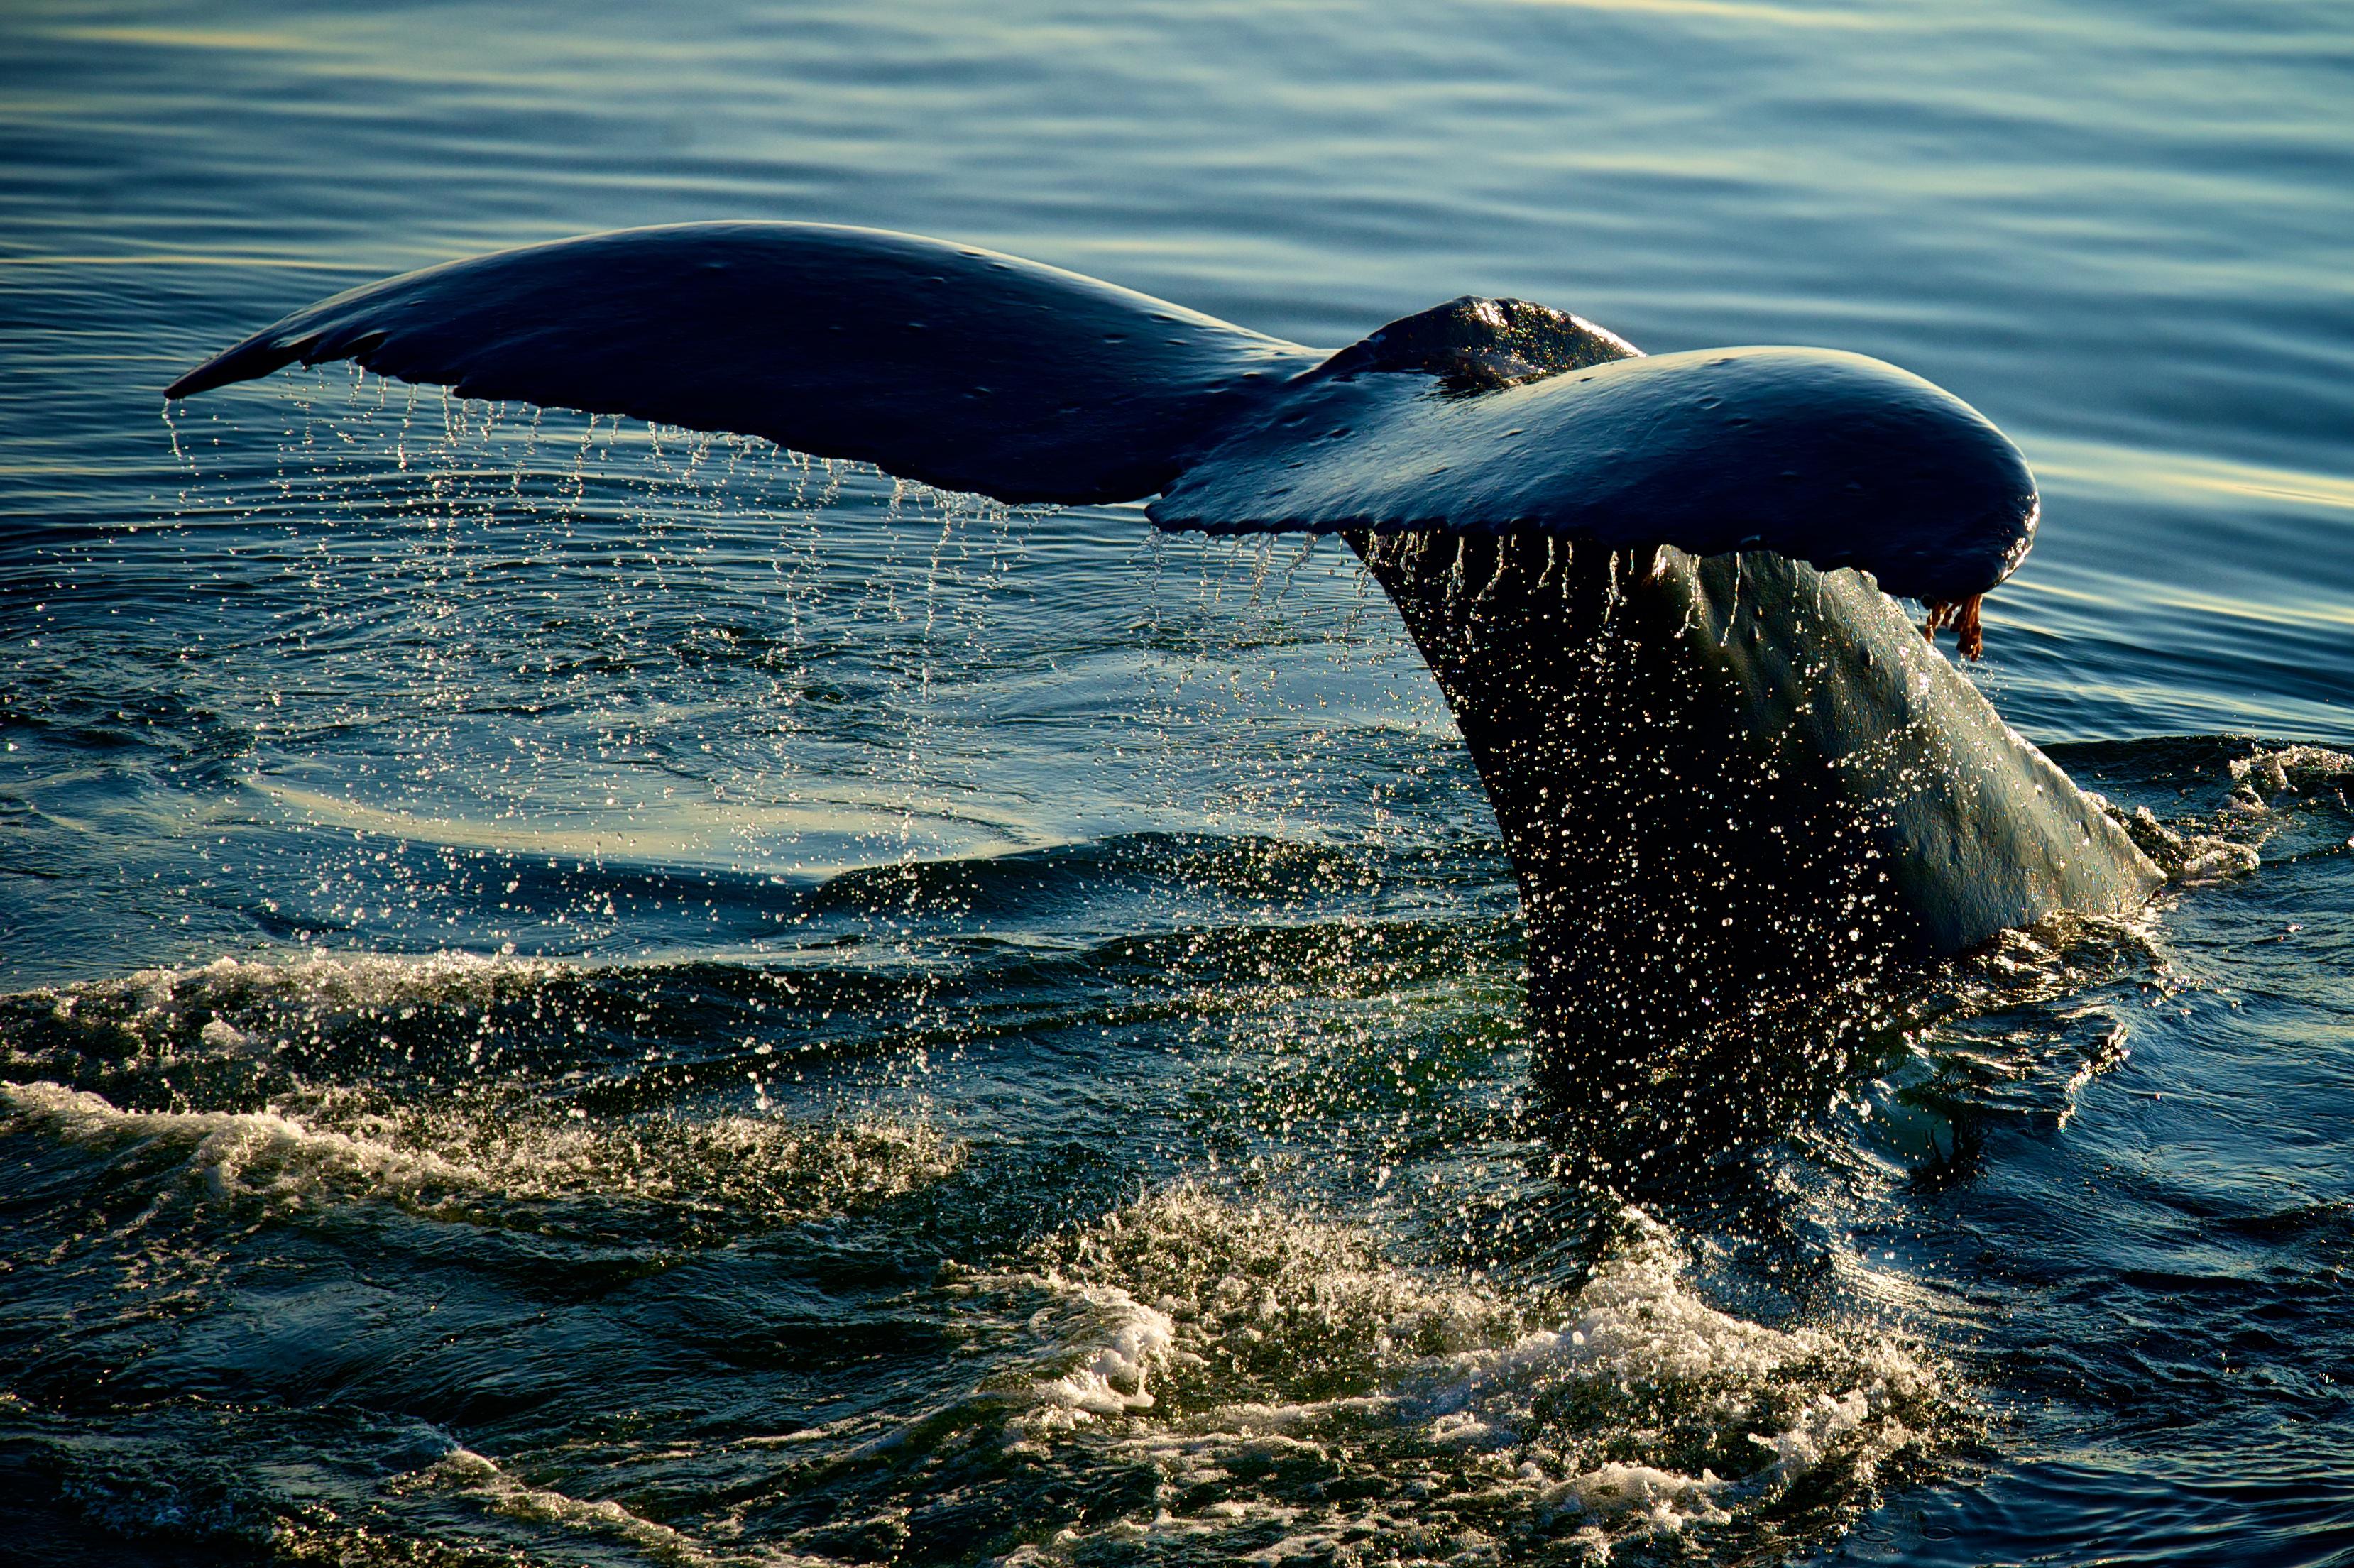 白海豚鲸鱼 库存图片. 图片 包括有 盐水, 哺乳动物, 男性, 绝种, 本质, 尾标, 眺望楼, 鲸鱼, 空白 - 104873